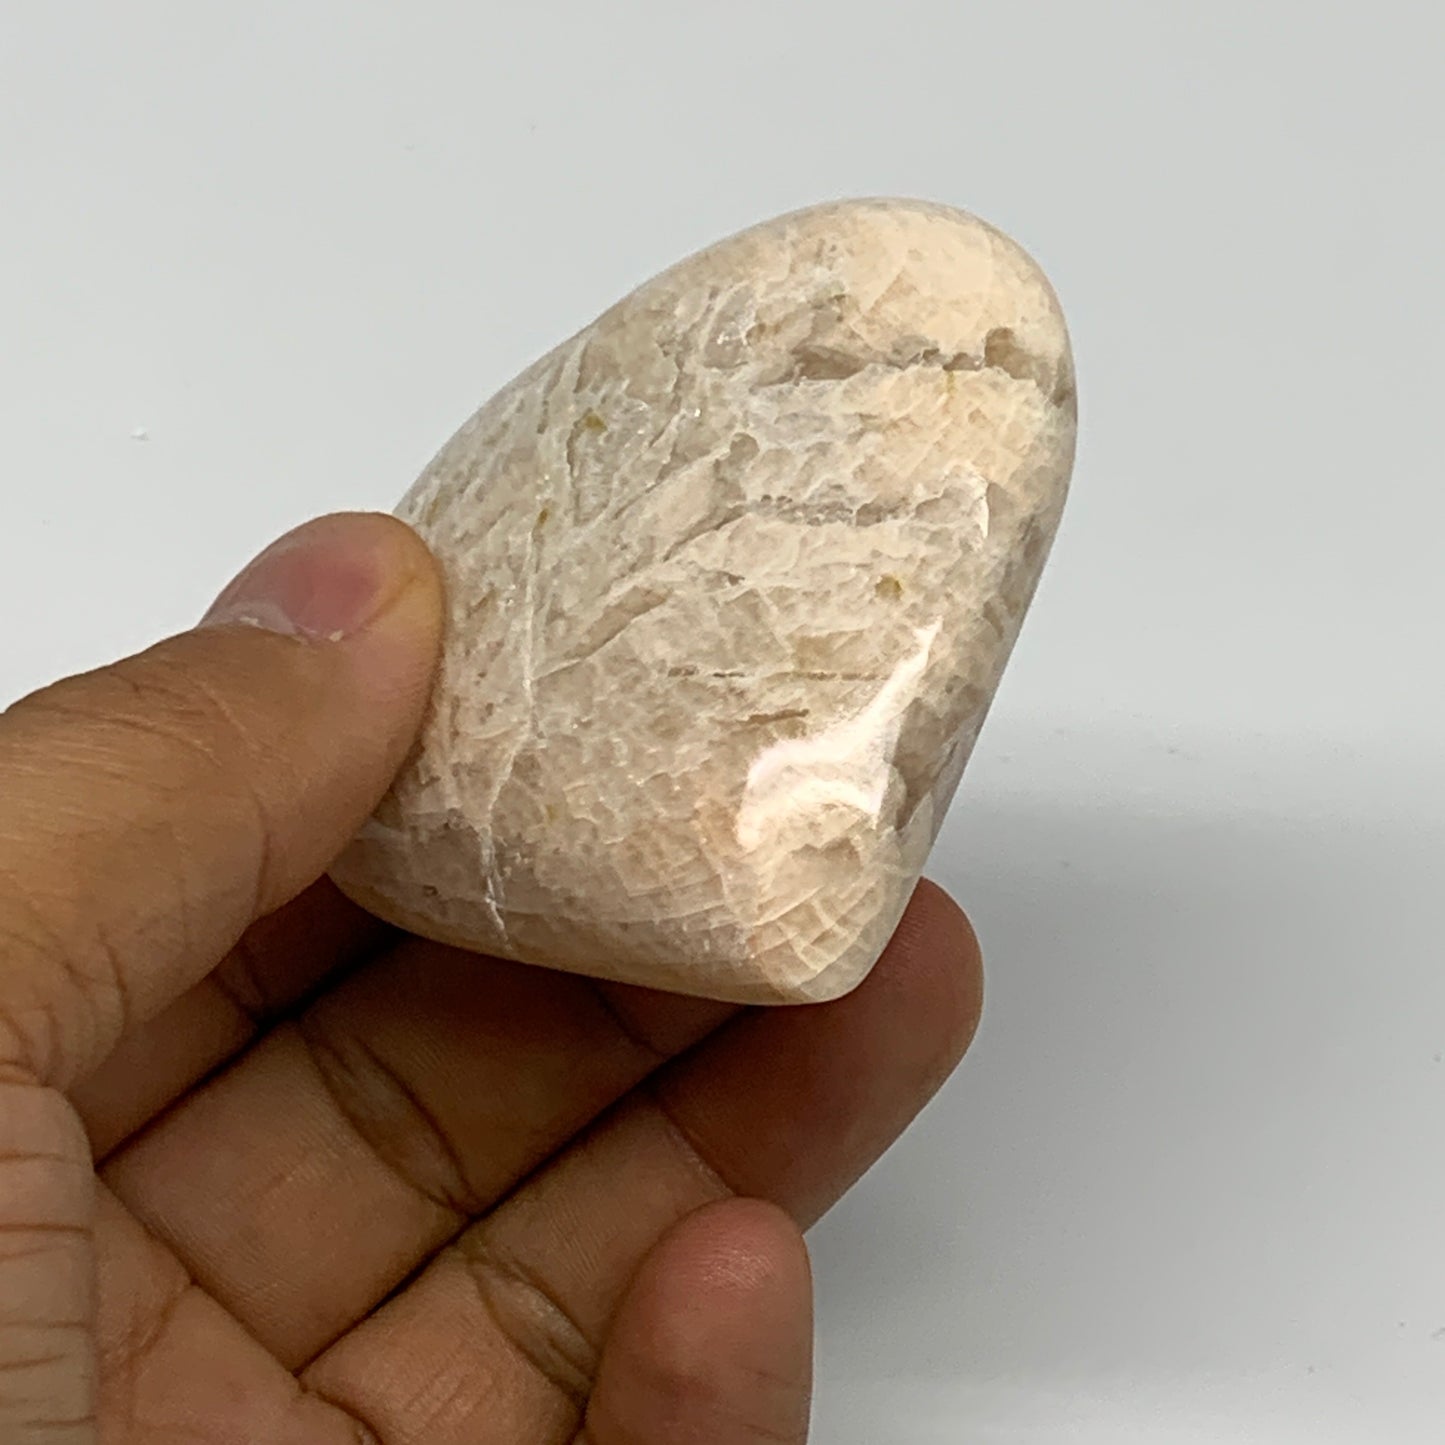 99.7g, 2.3"x2.4"x0.9", Peach Moonstone Heart Crystal Polished Gemstone, B28120